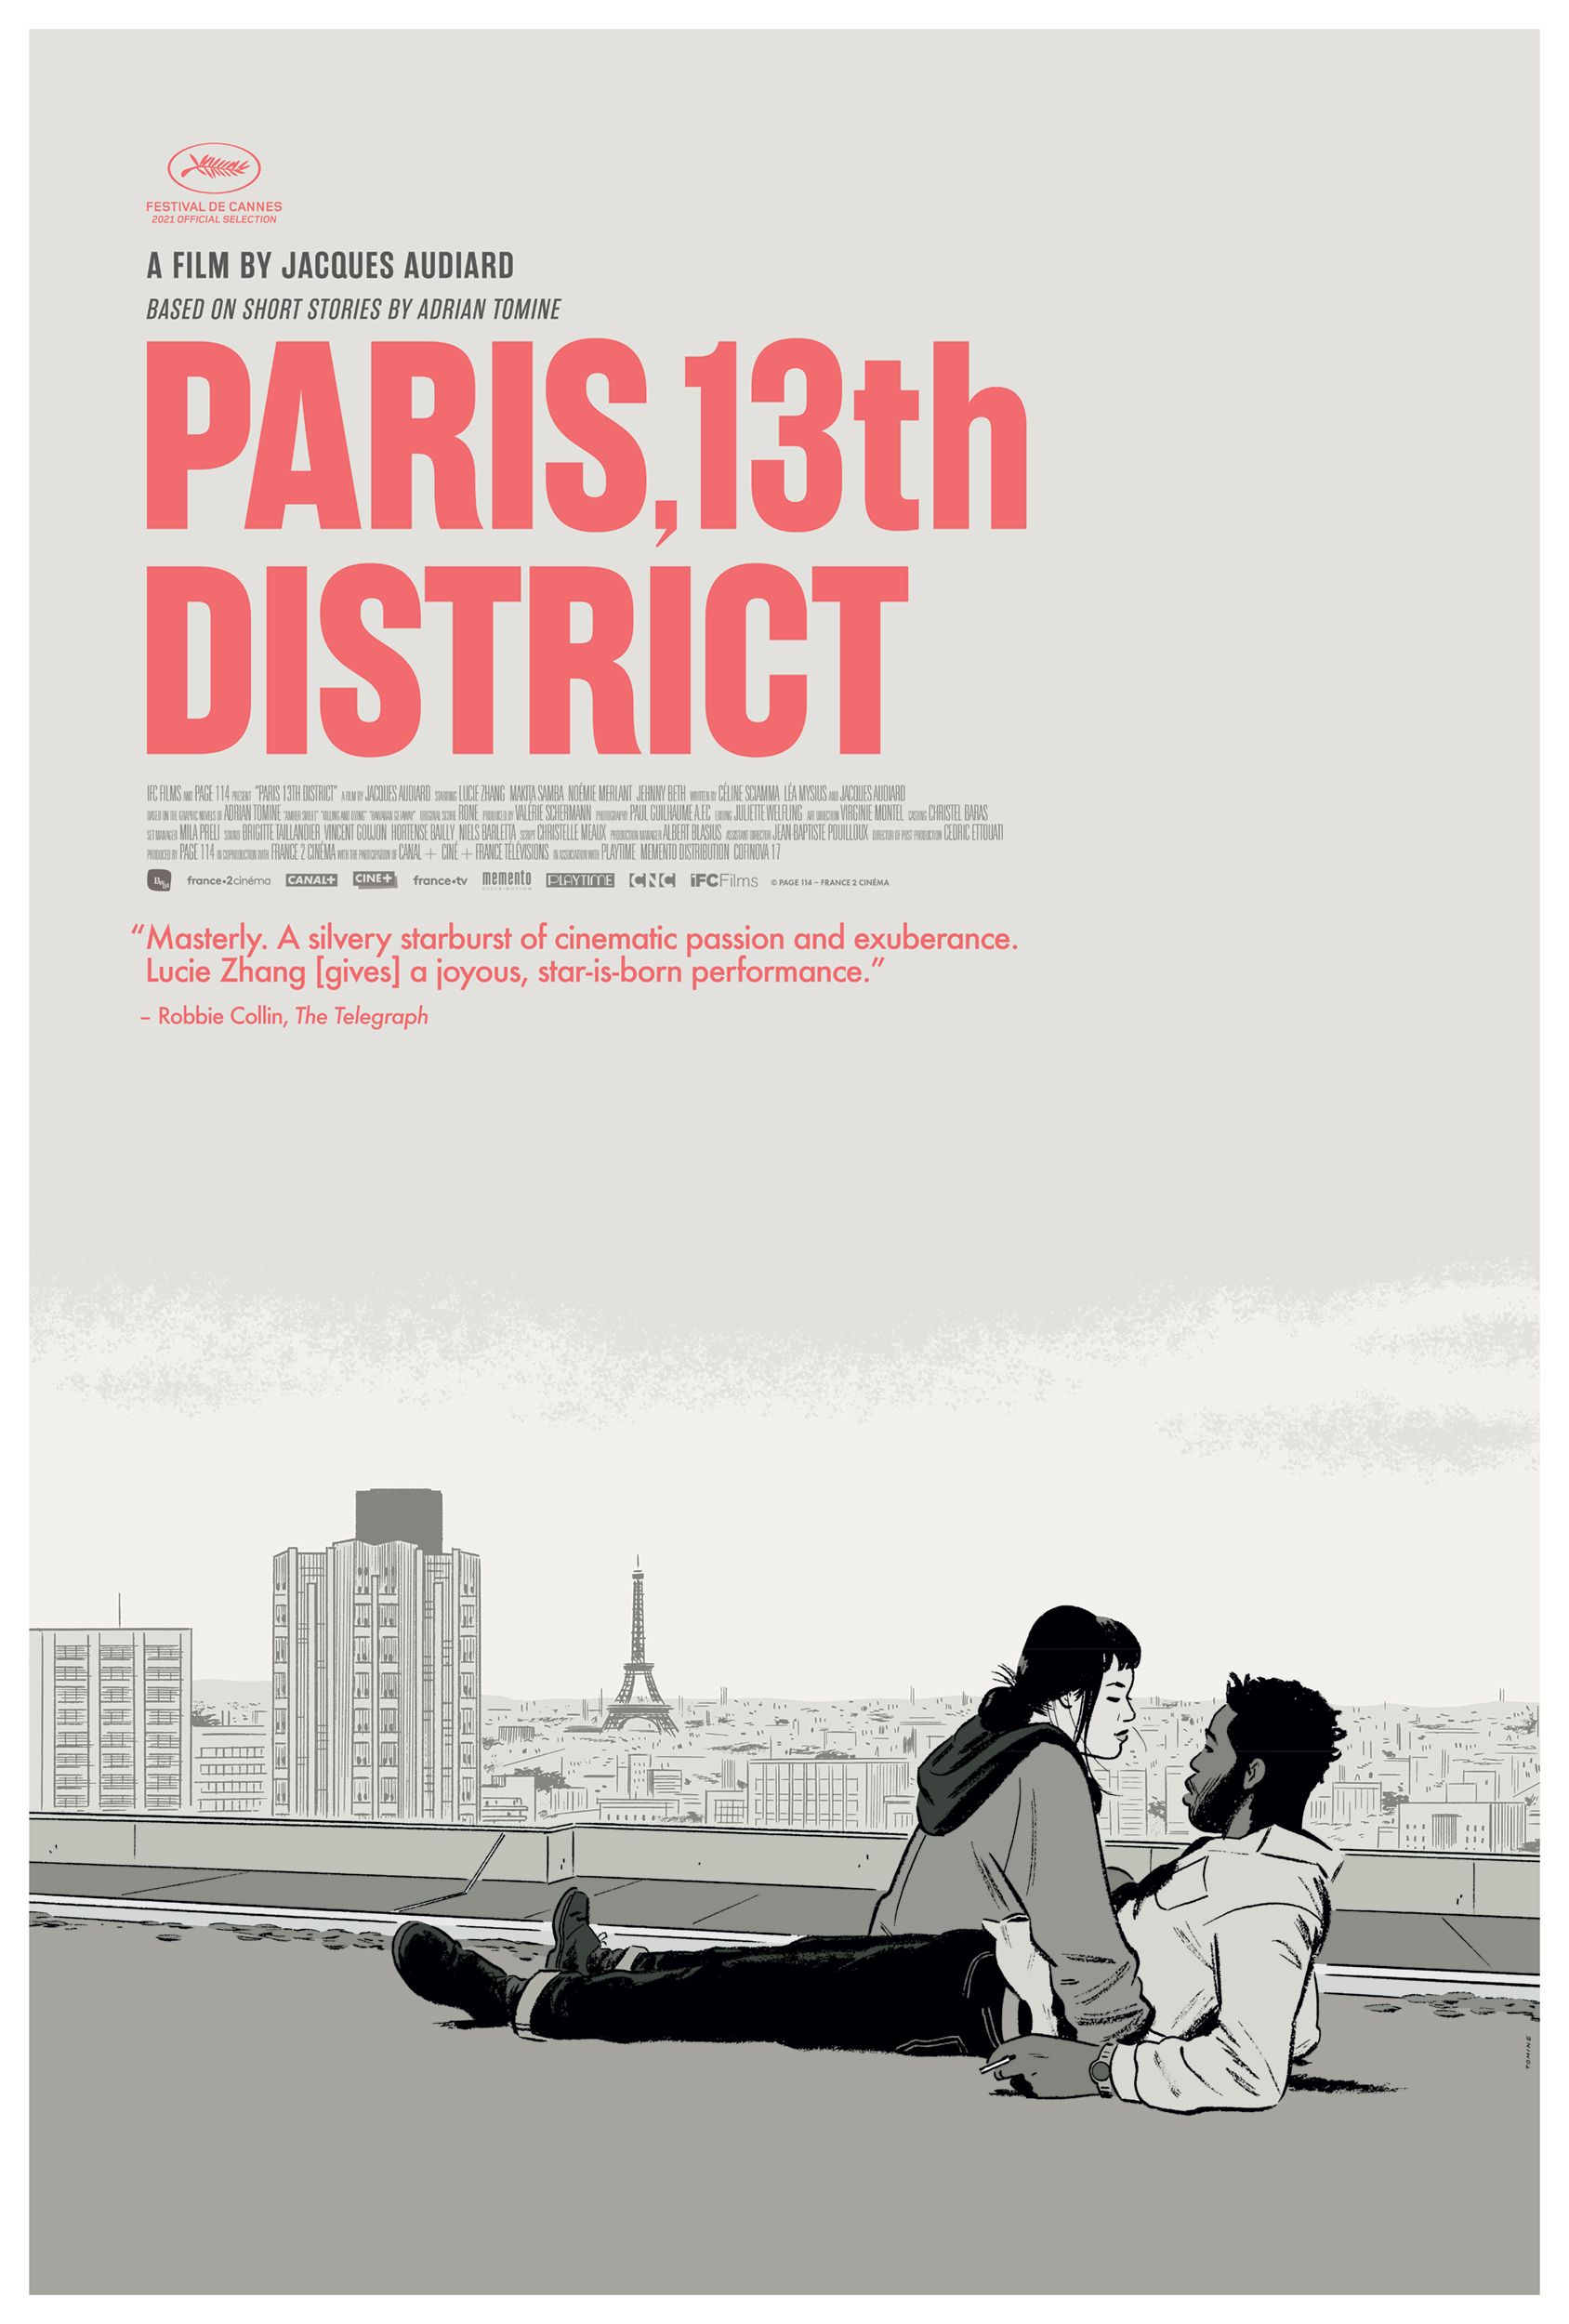 PARIS 13TH DISTRICT